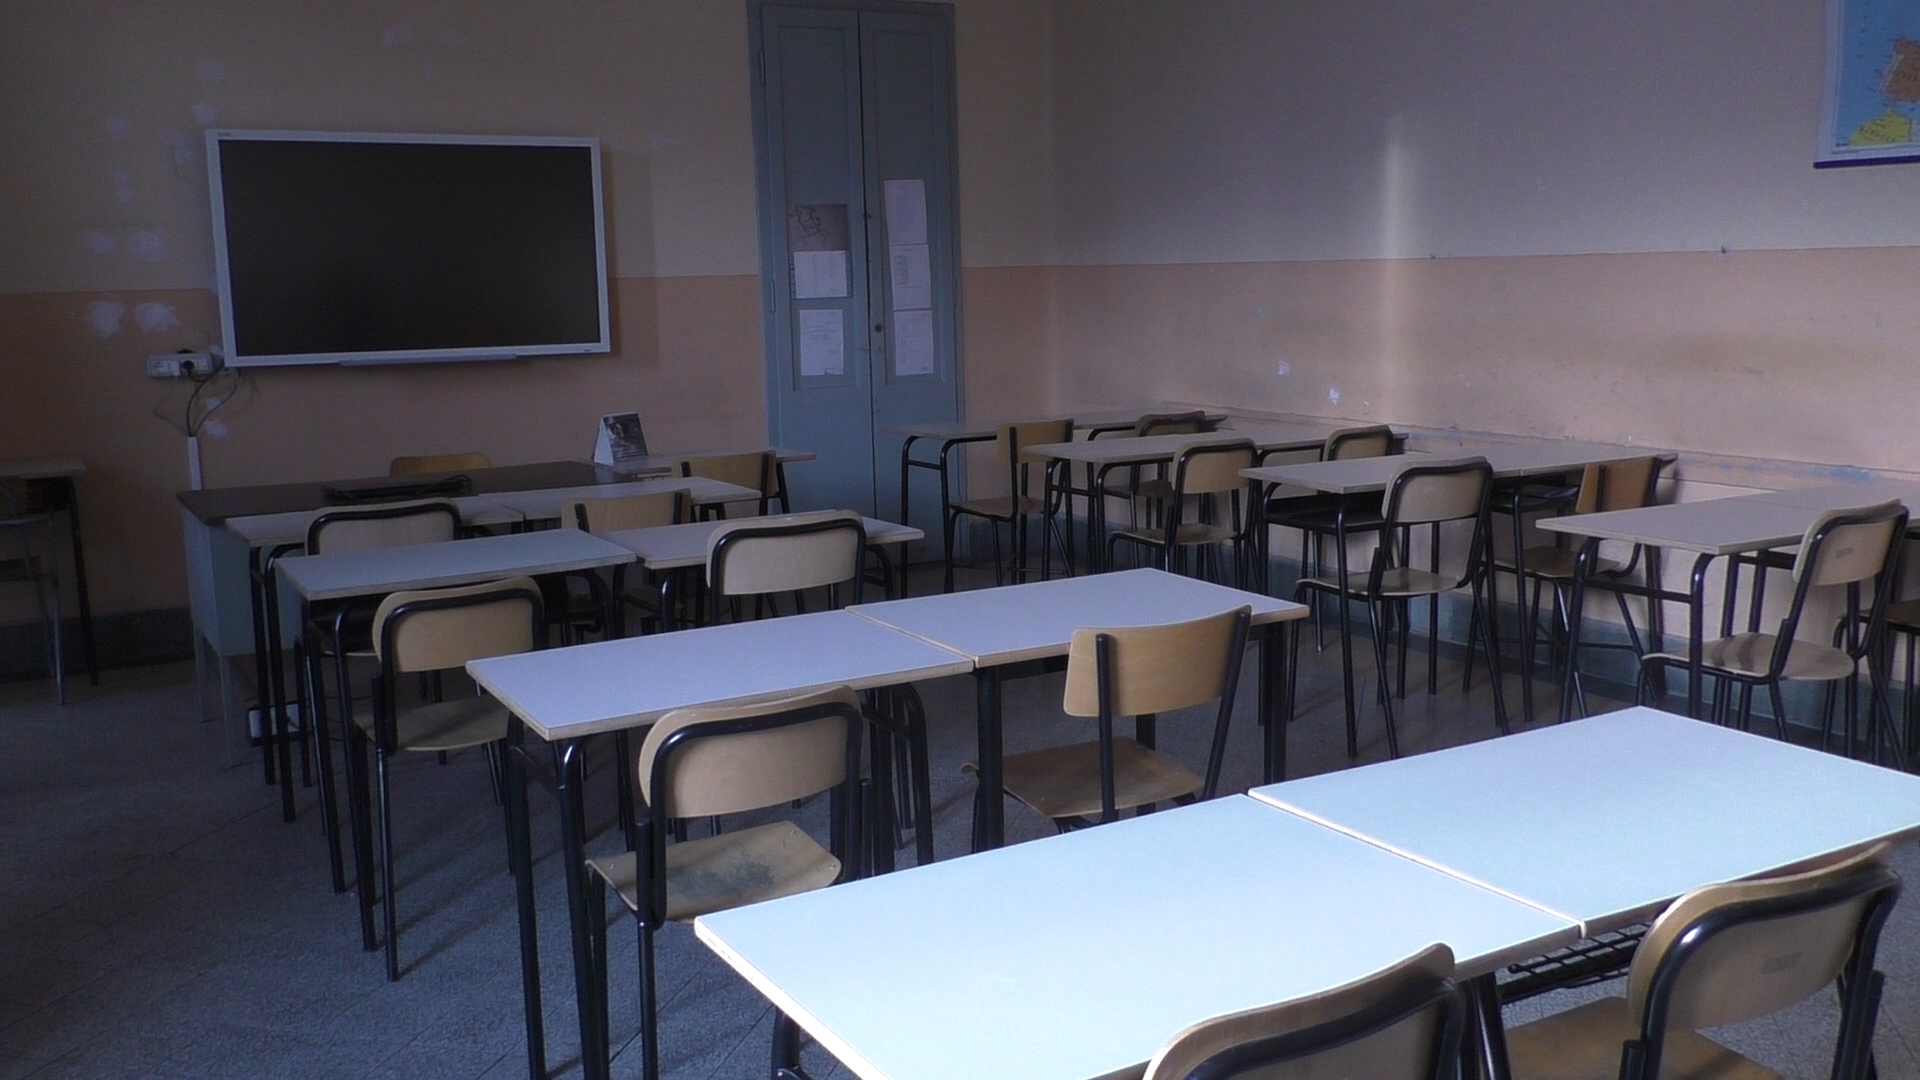 Regione Piemonte: “La febbre sia misurata a scuola. Stanziati 500 mila euro per i termoscanner”